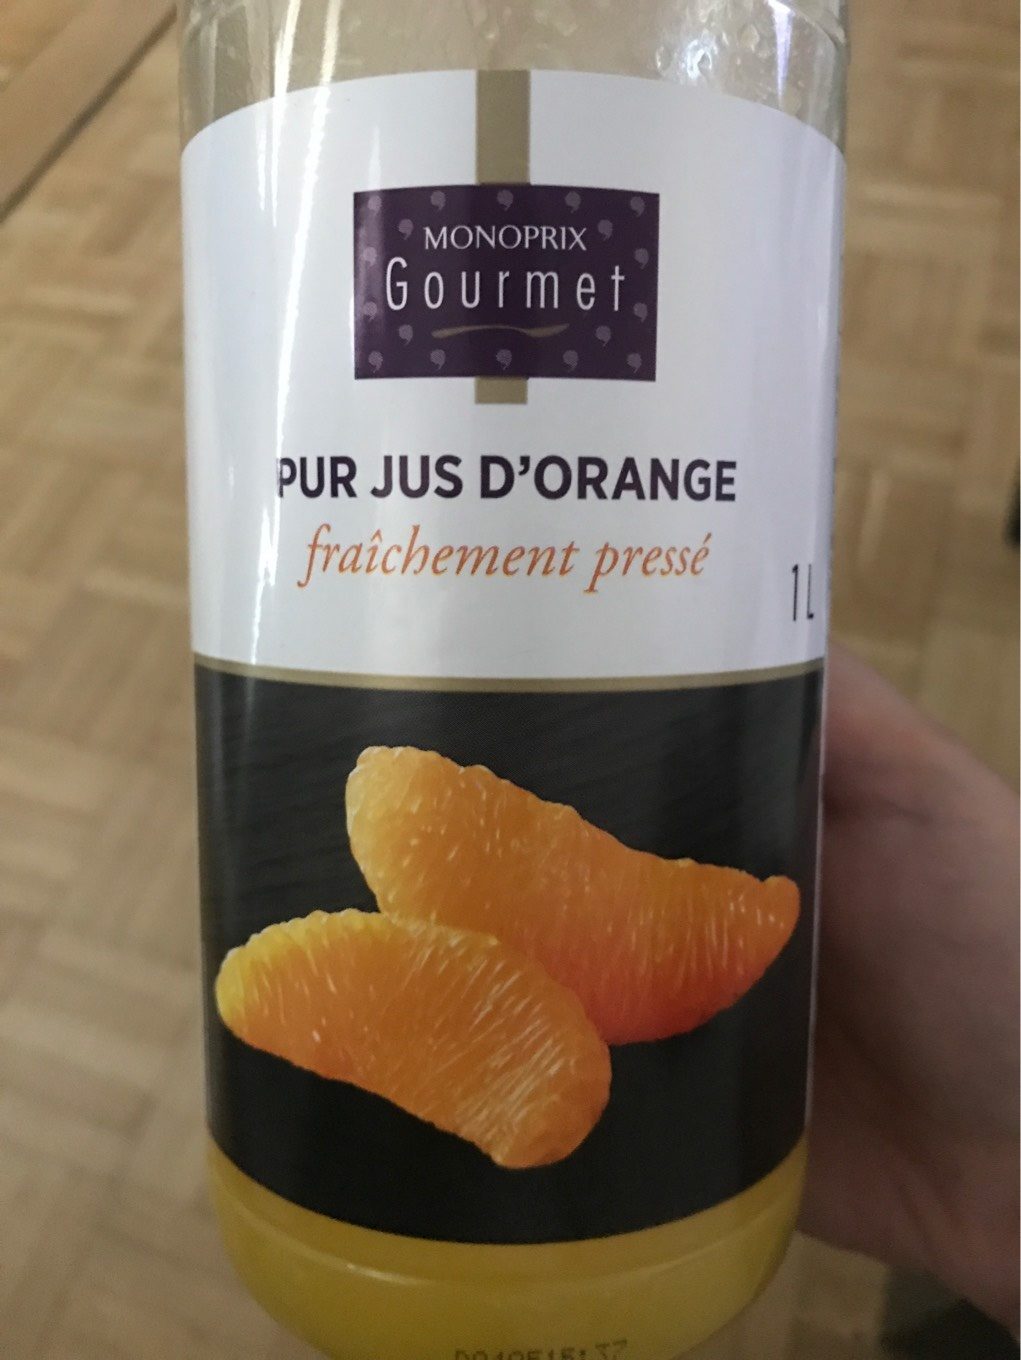 Pur jus d'orange fraichement pressé - Product - fr